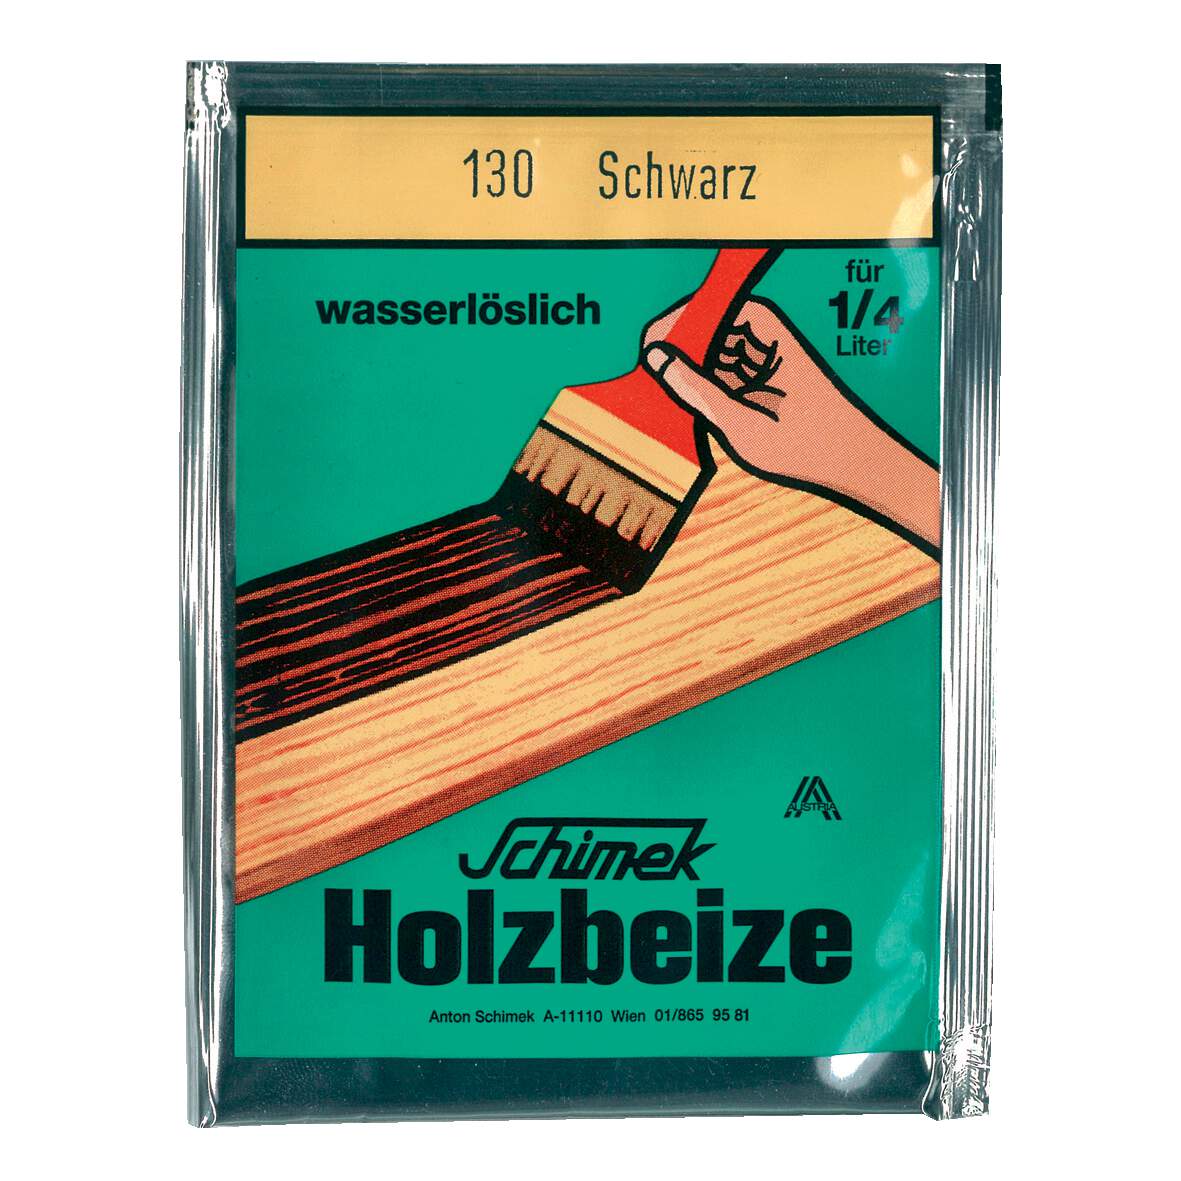 1216636 - Holzbeize wasserlöslich